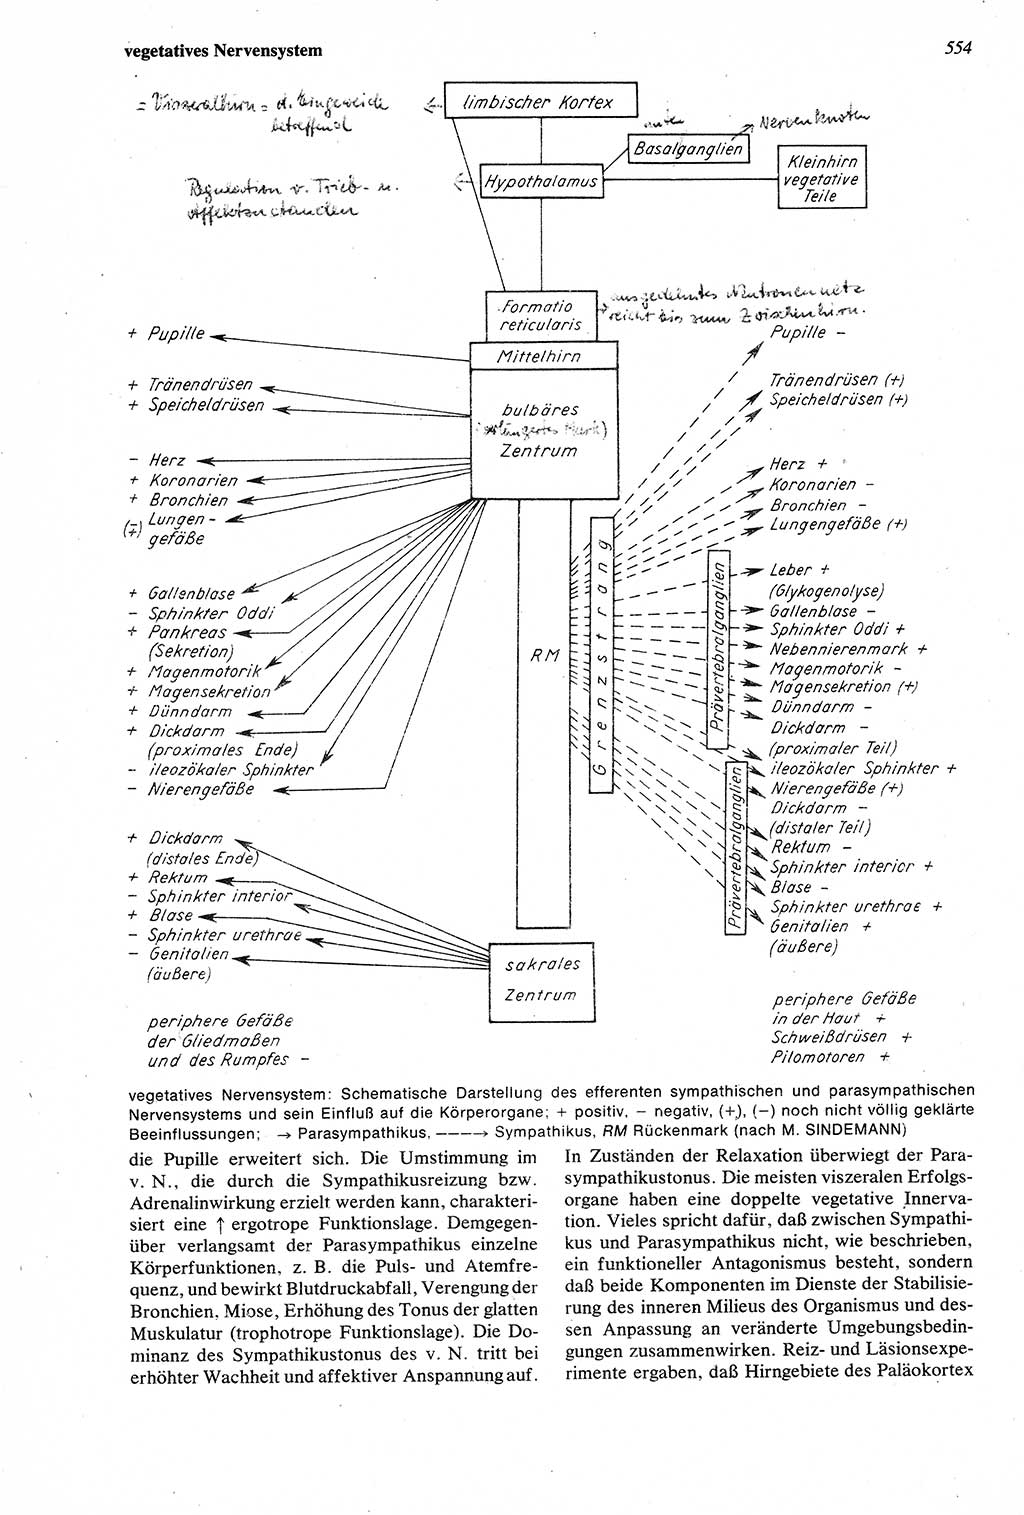 Wörterbuch der Psychologie [Deutsche Demokratische Republik (DDR)] 1976, Seite 554 (Wb. Psych. DDR 1976, S. 554)